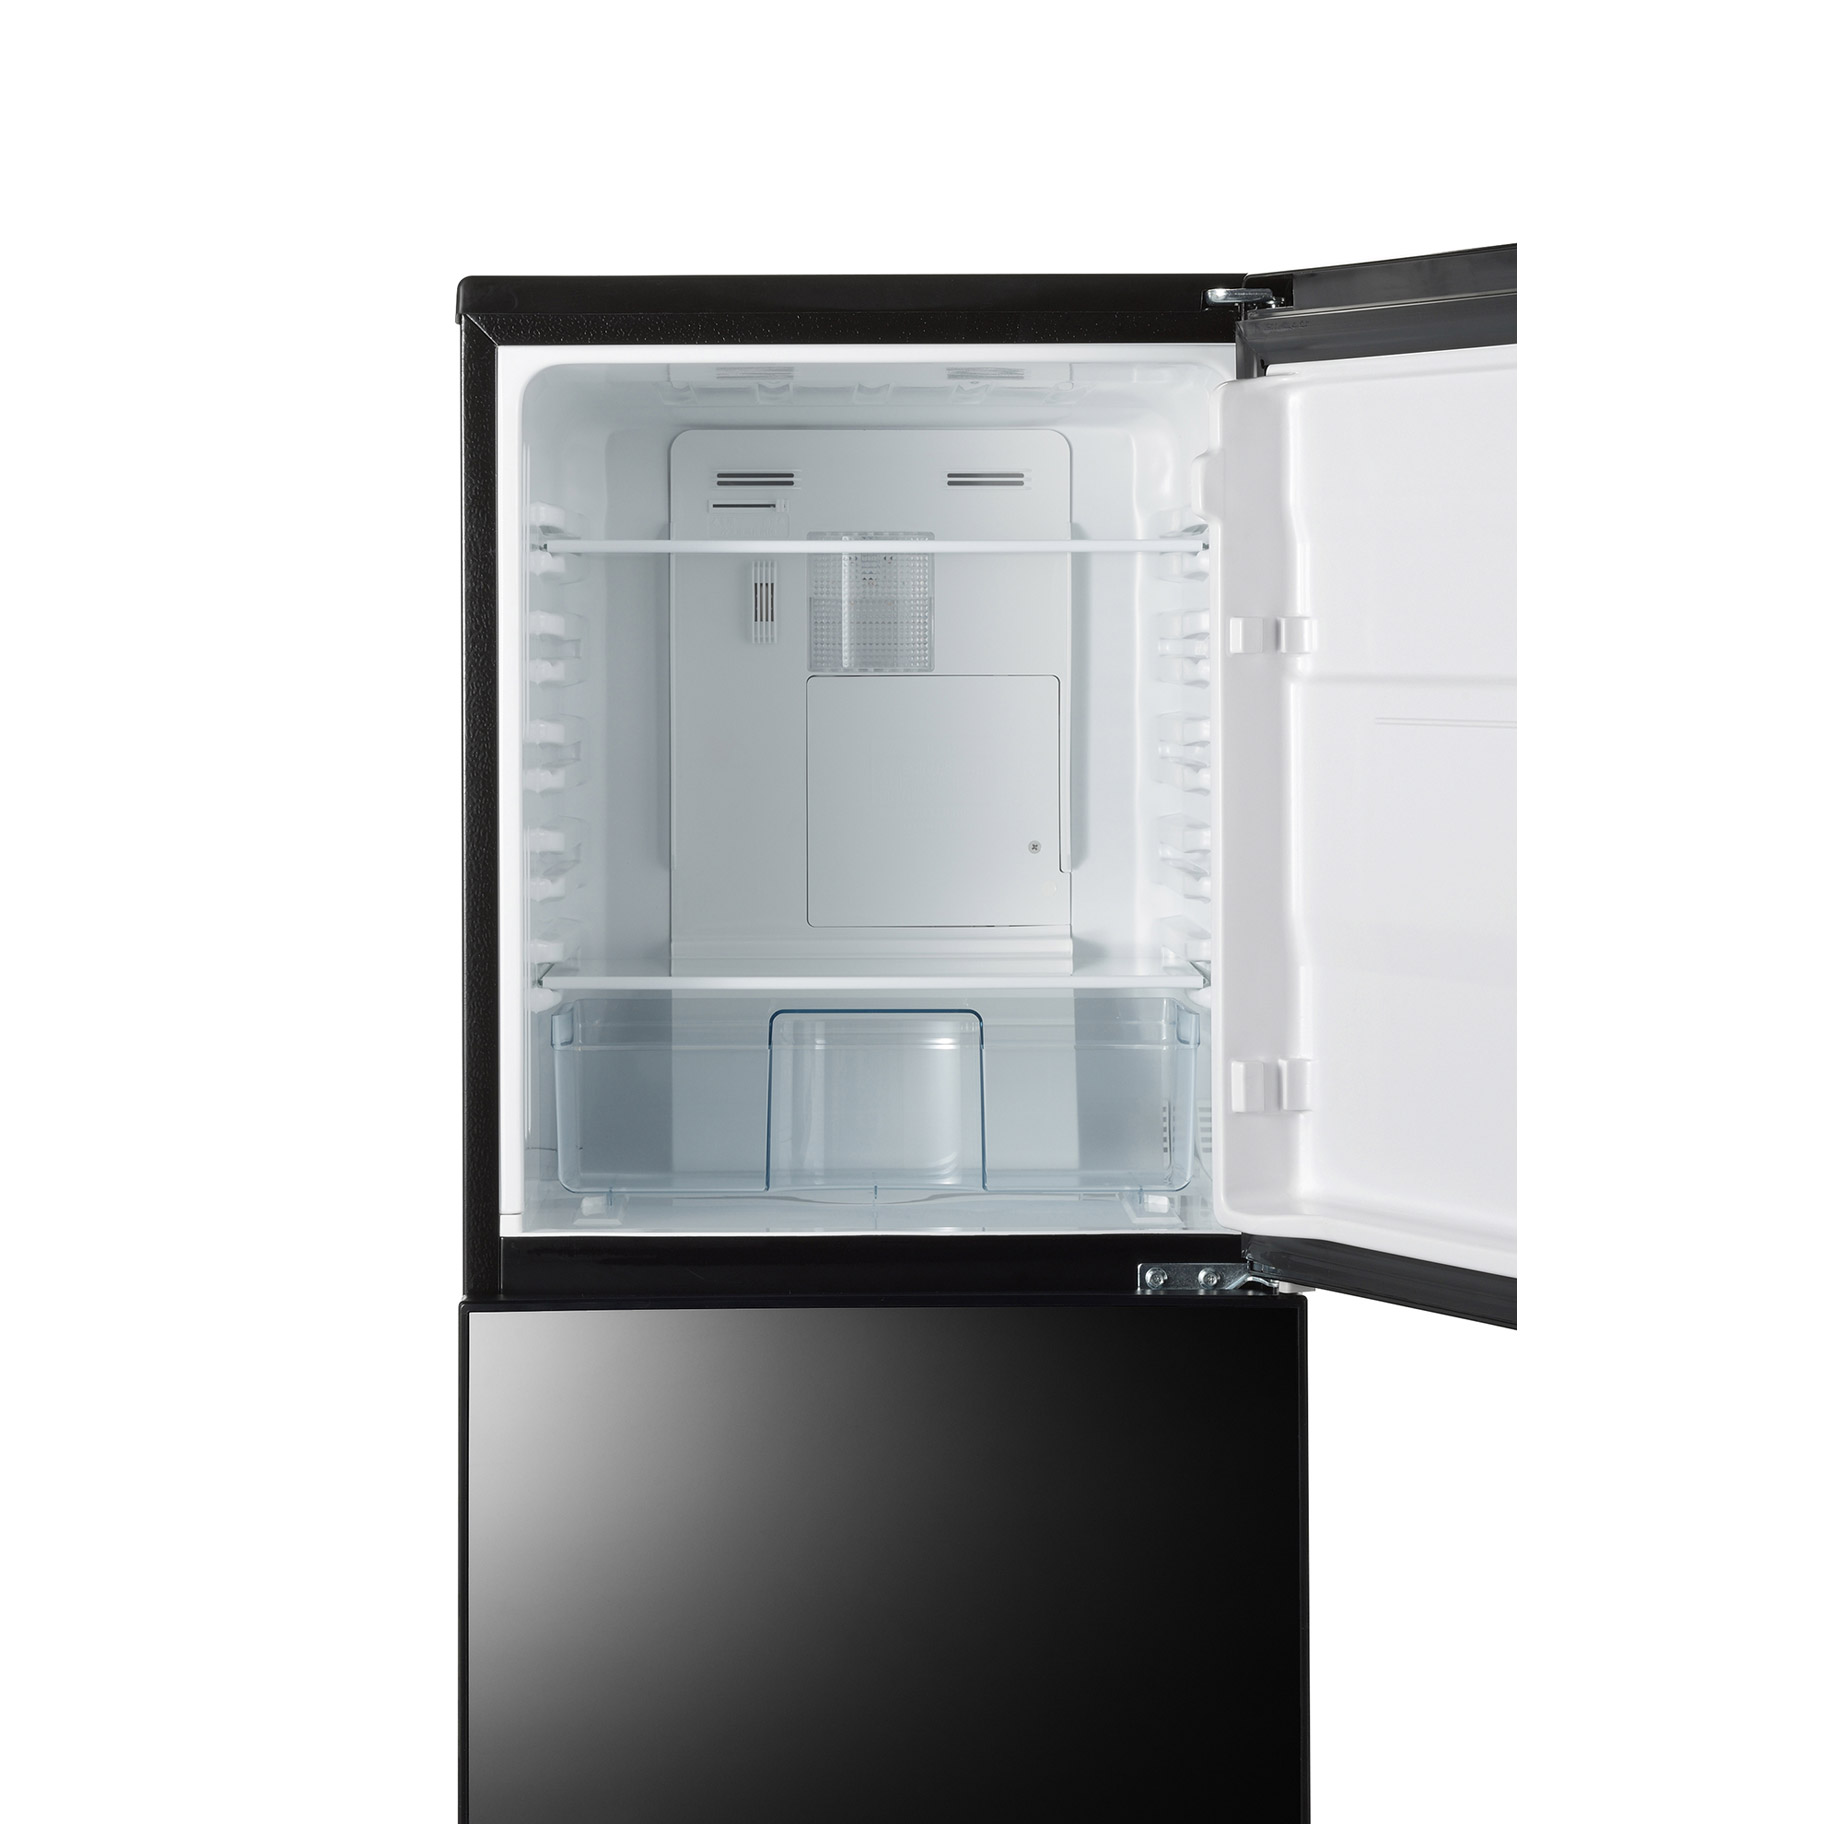 ツインバード 2ドア冷凍冷蔵庫 ミラードア HR-FJ11B-